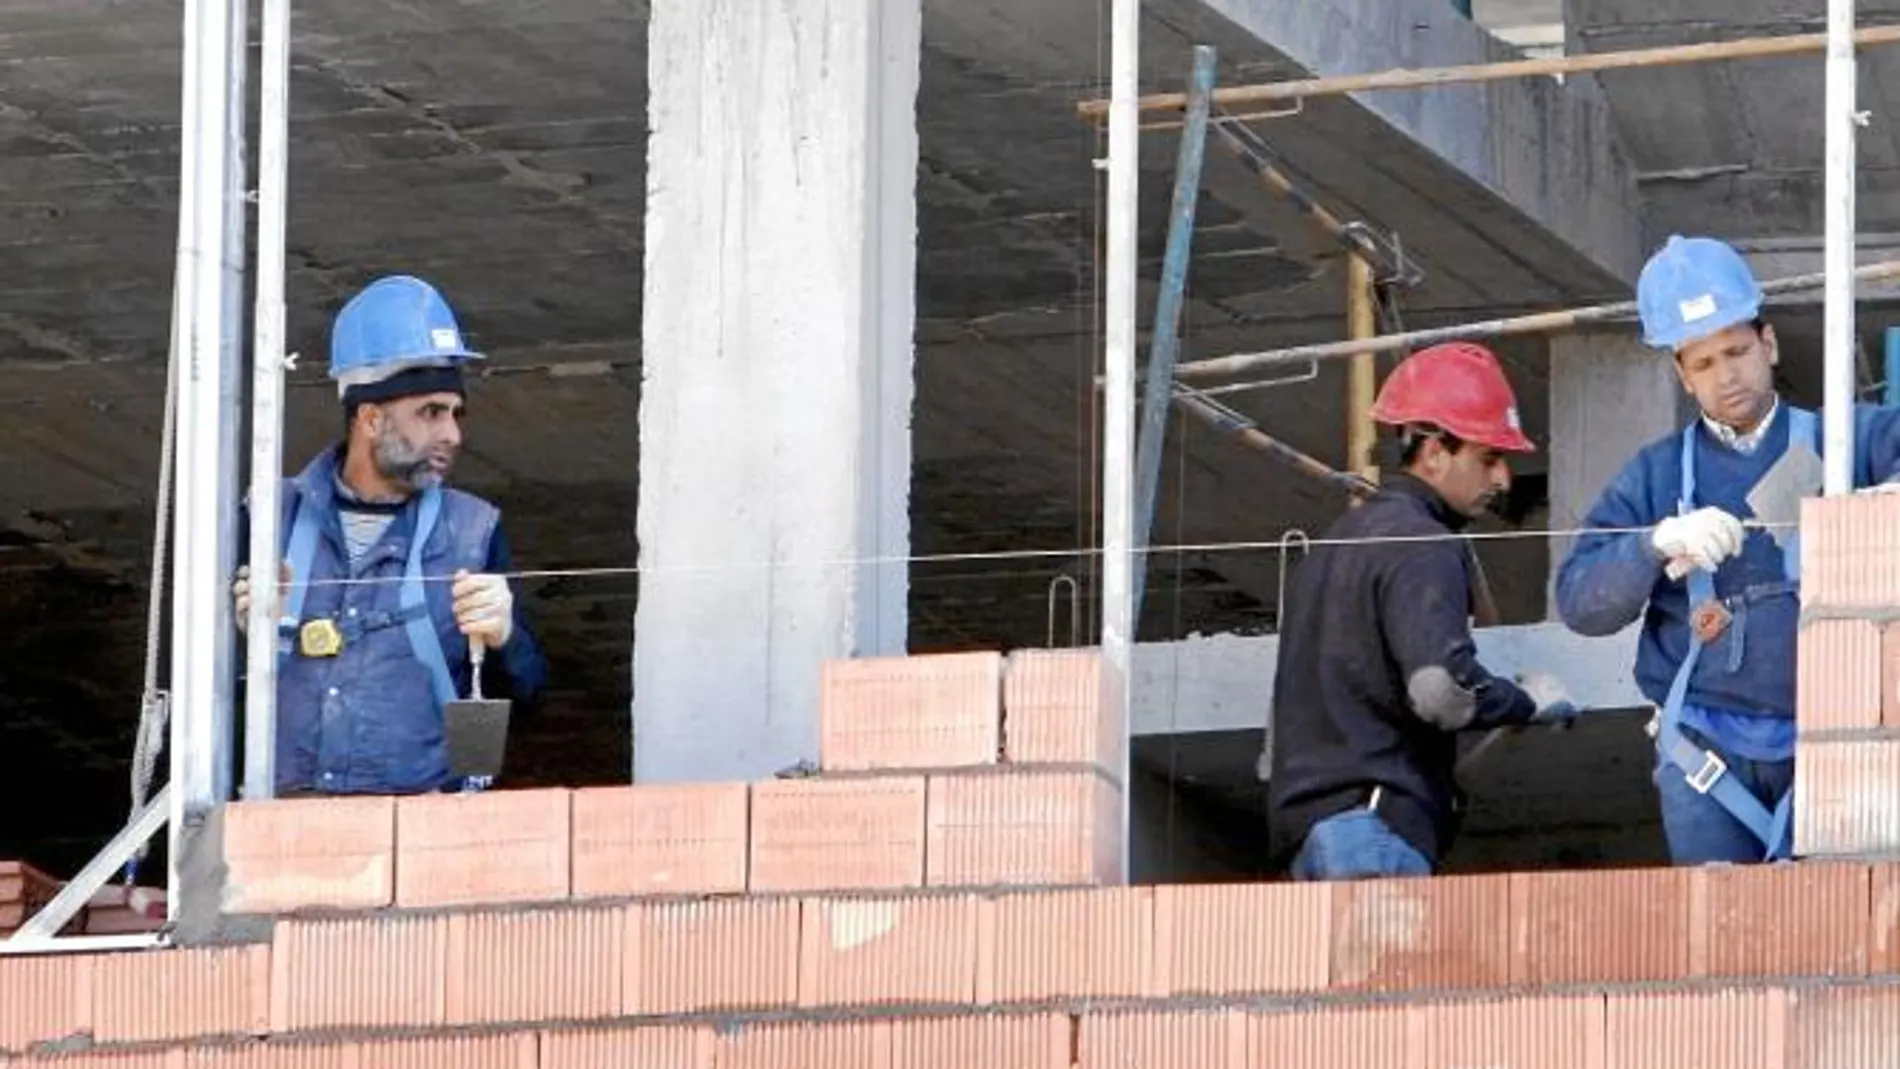 Murcia le planta cara al paro y crea 12200 empleos nuevos en el segundo trimestre